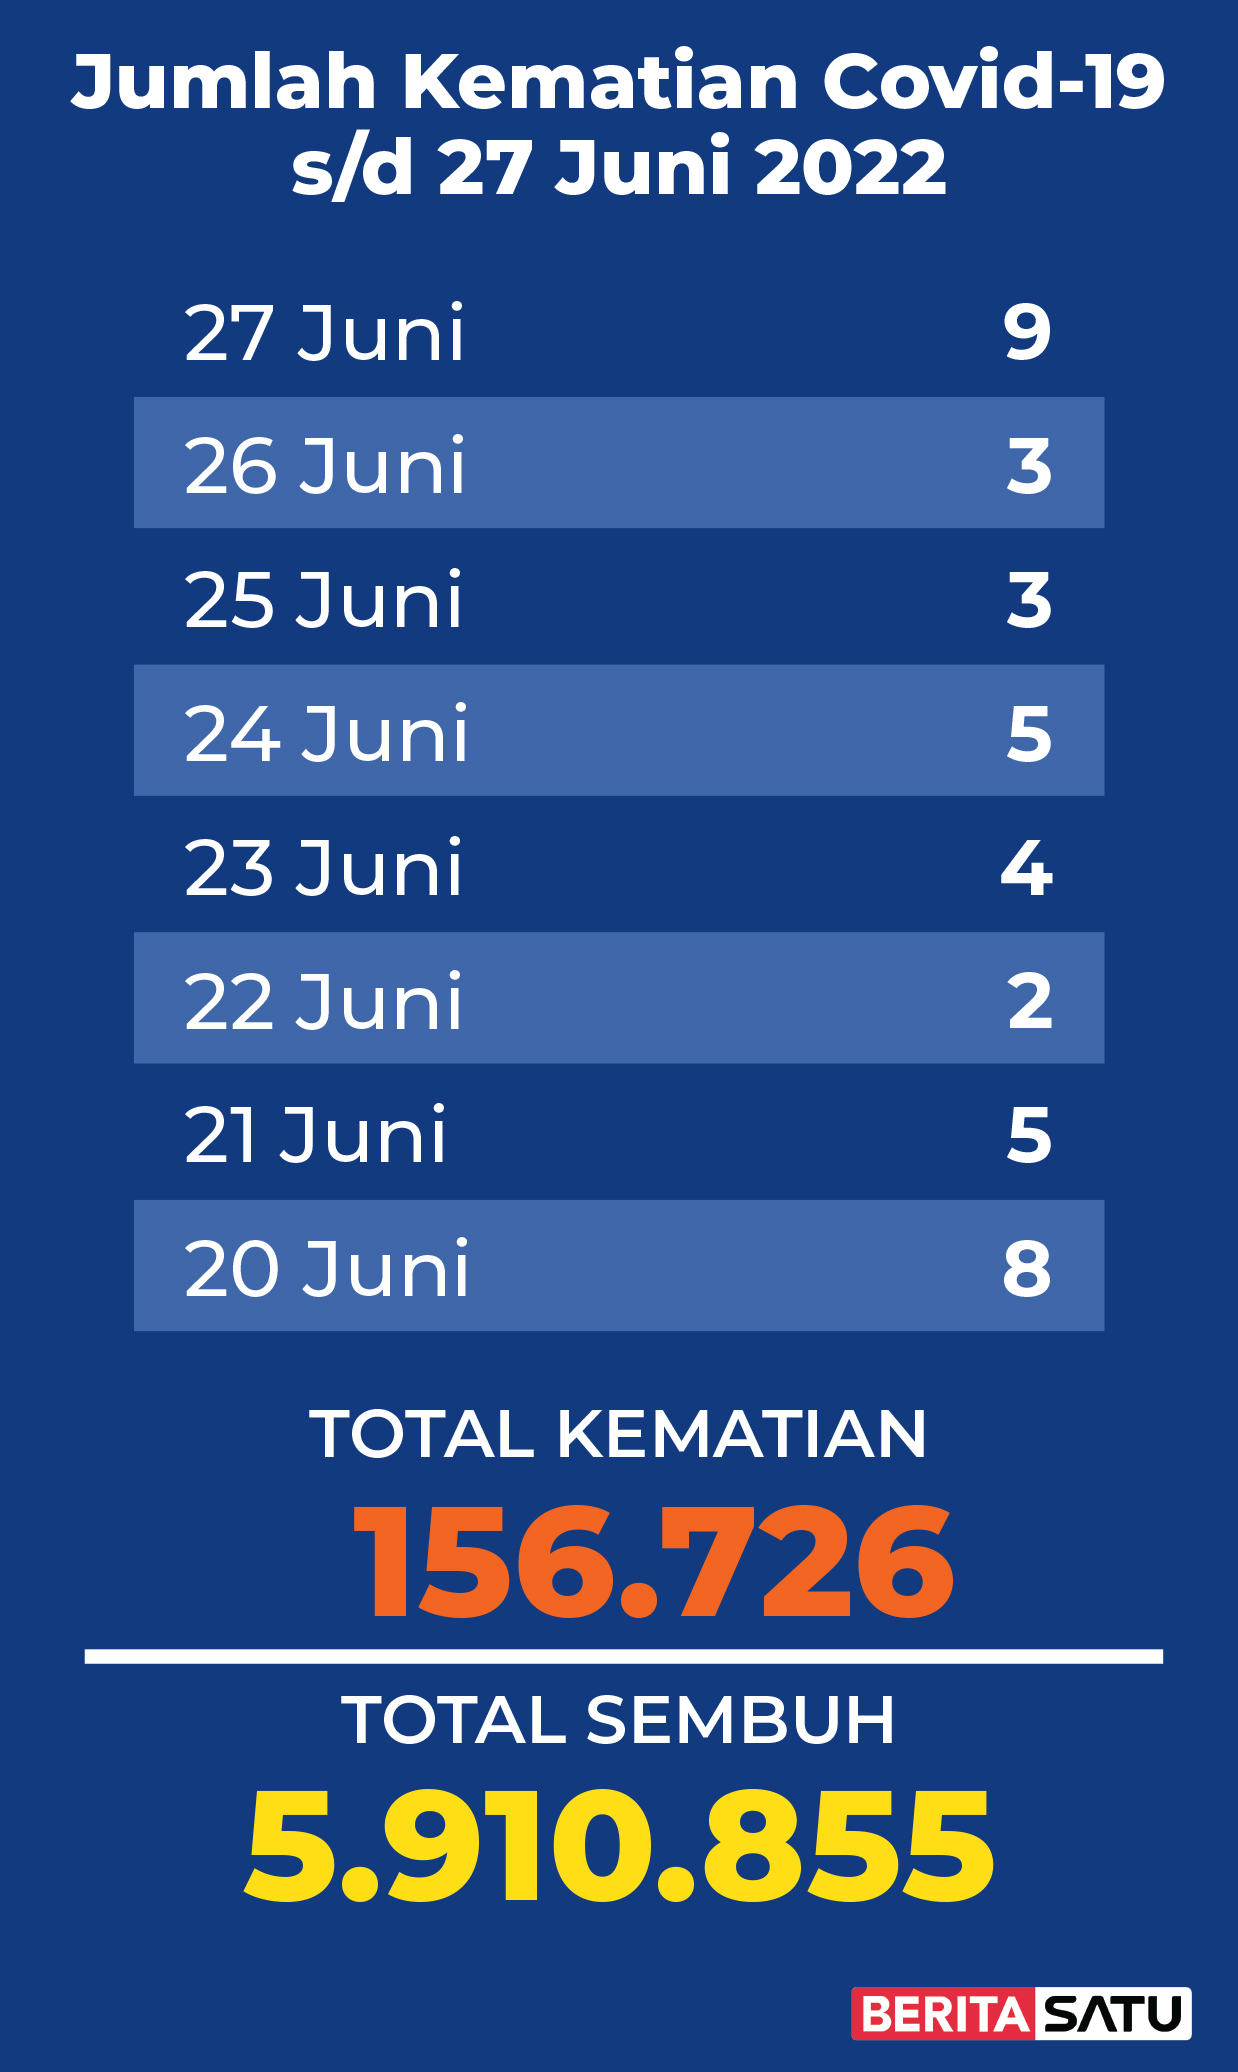 Data Kematian Covid-19 di Indonesia sampai 27 Juni 2022